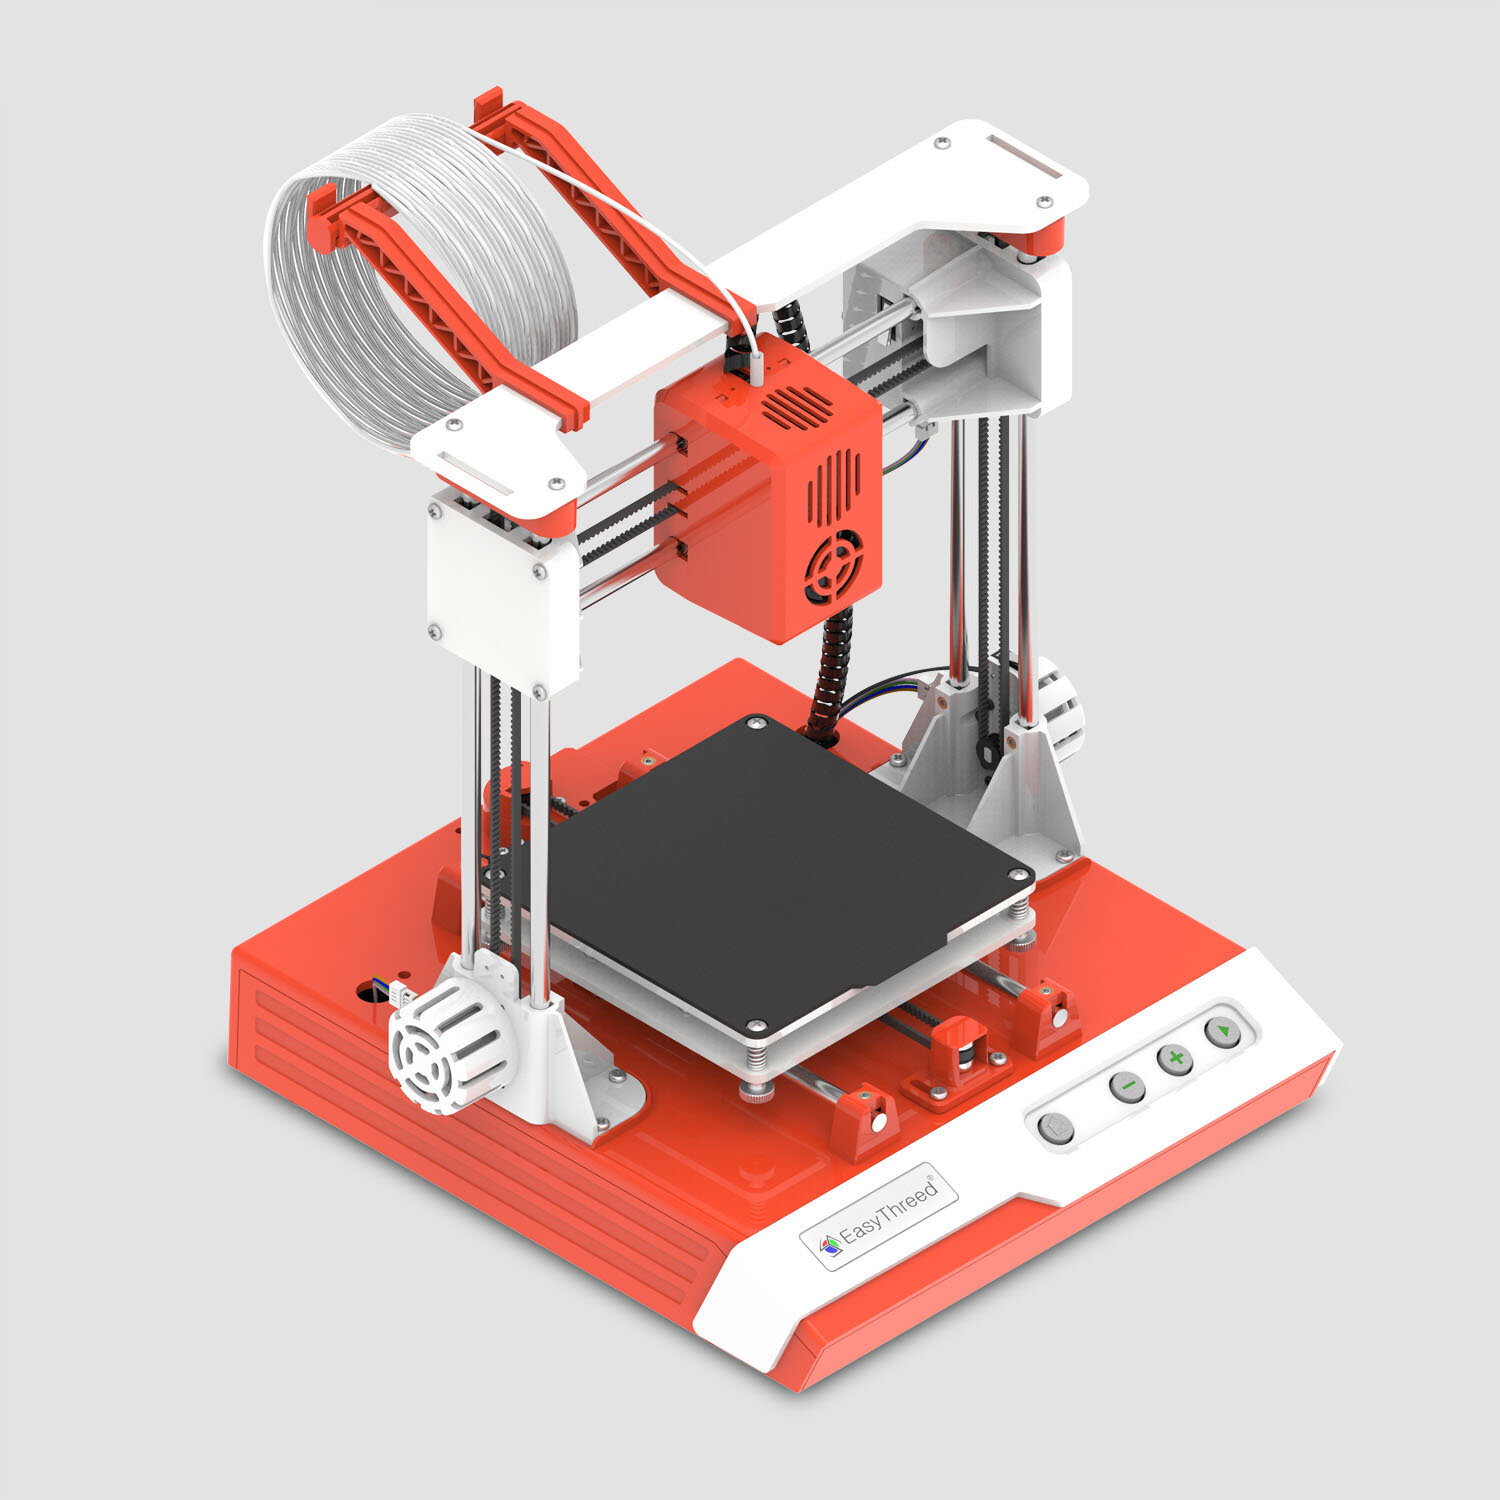 Banggood】 Easythreed® K1 Desktop Mini 3D Printer Kit レビュー 